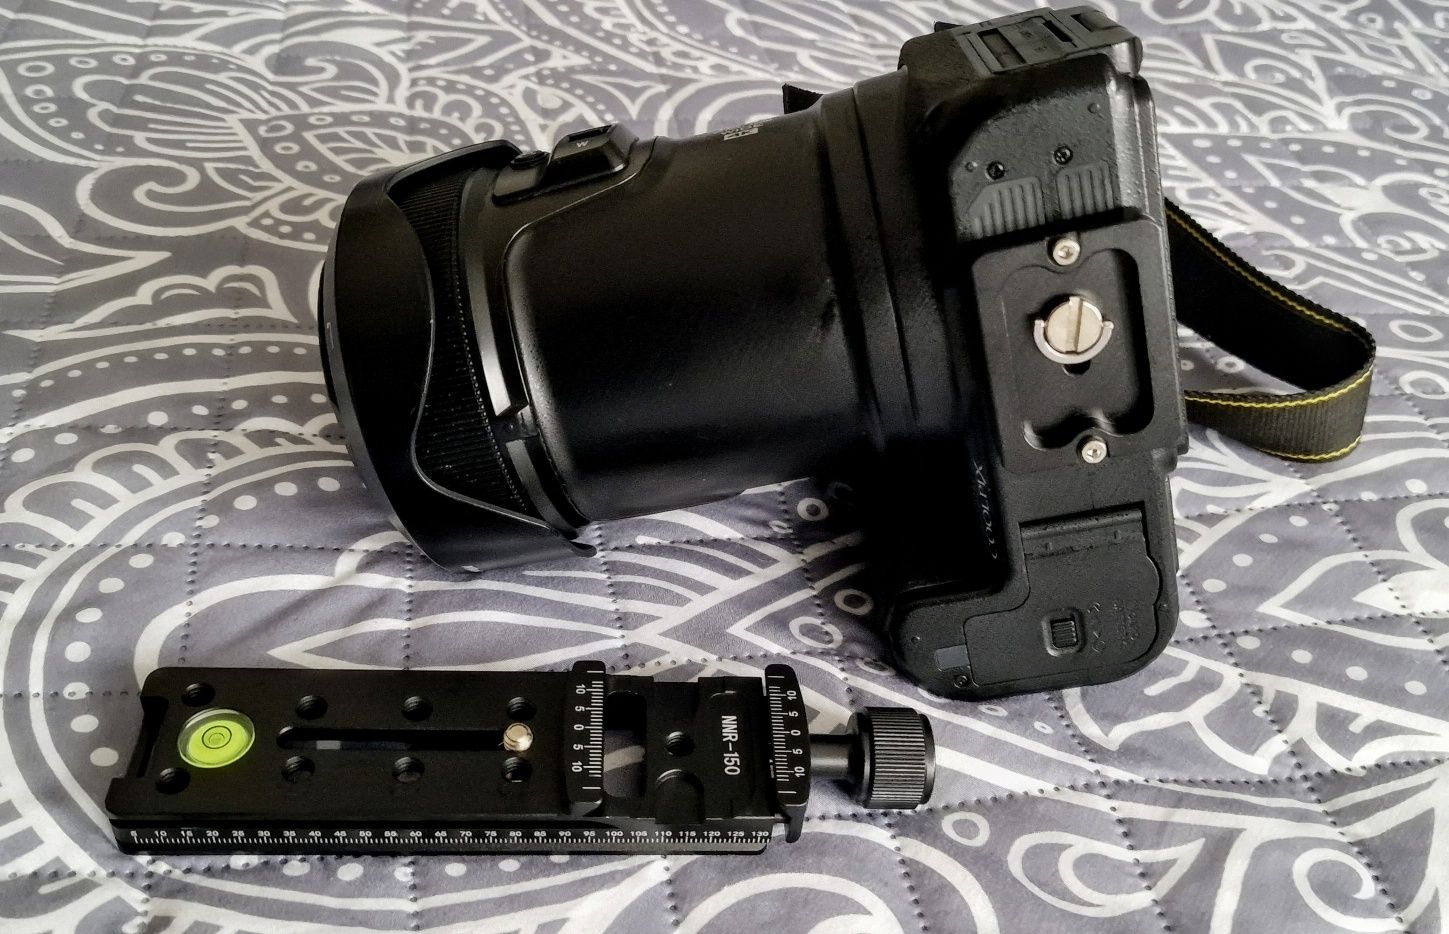 Długa płytka złączka fotograficzna statyw 1/4 Nikon P100 zoom Sigma